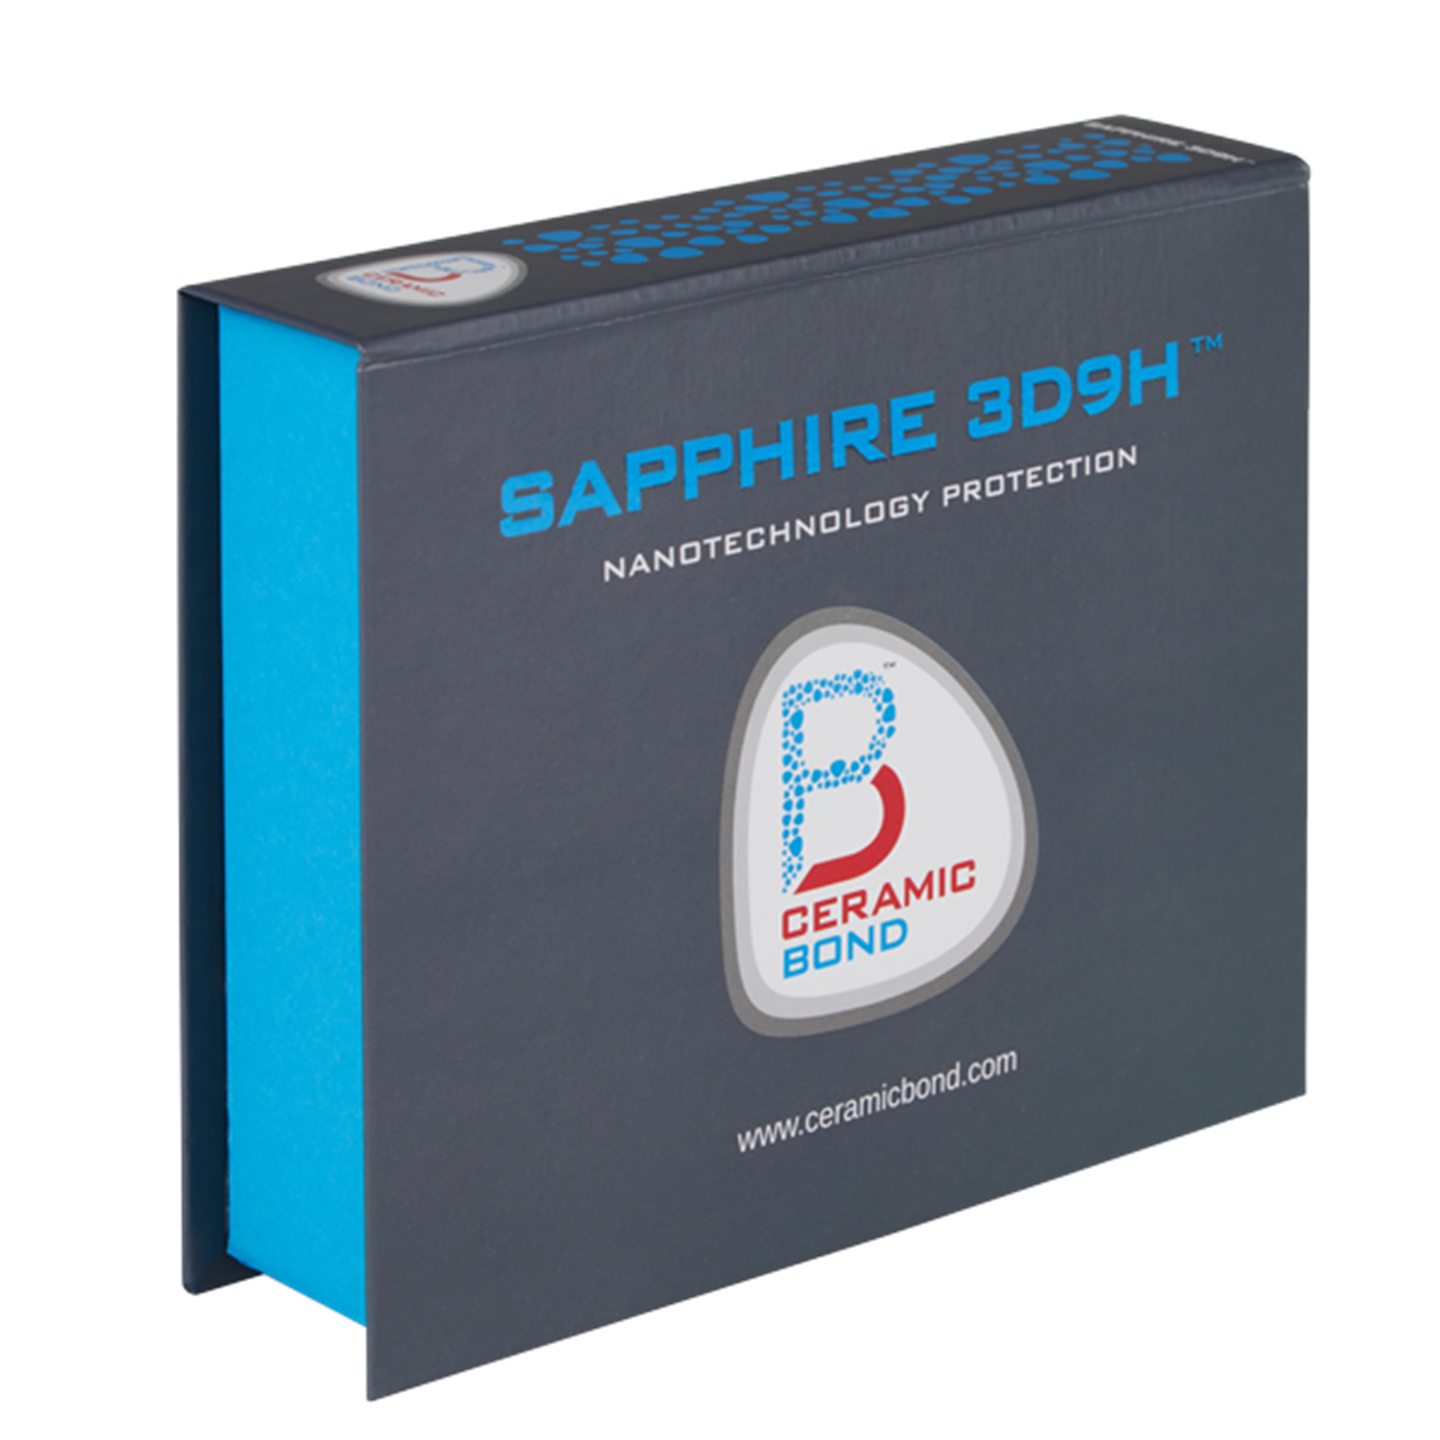 SAPPHIRE 3D9H-NF ™ (New Formula)